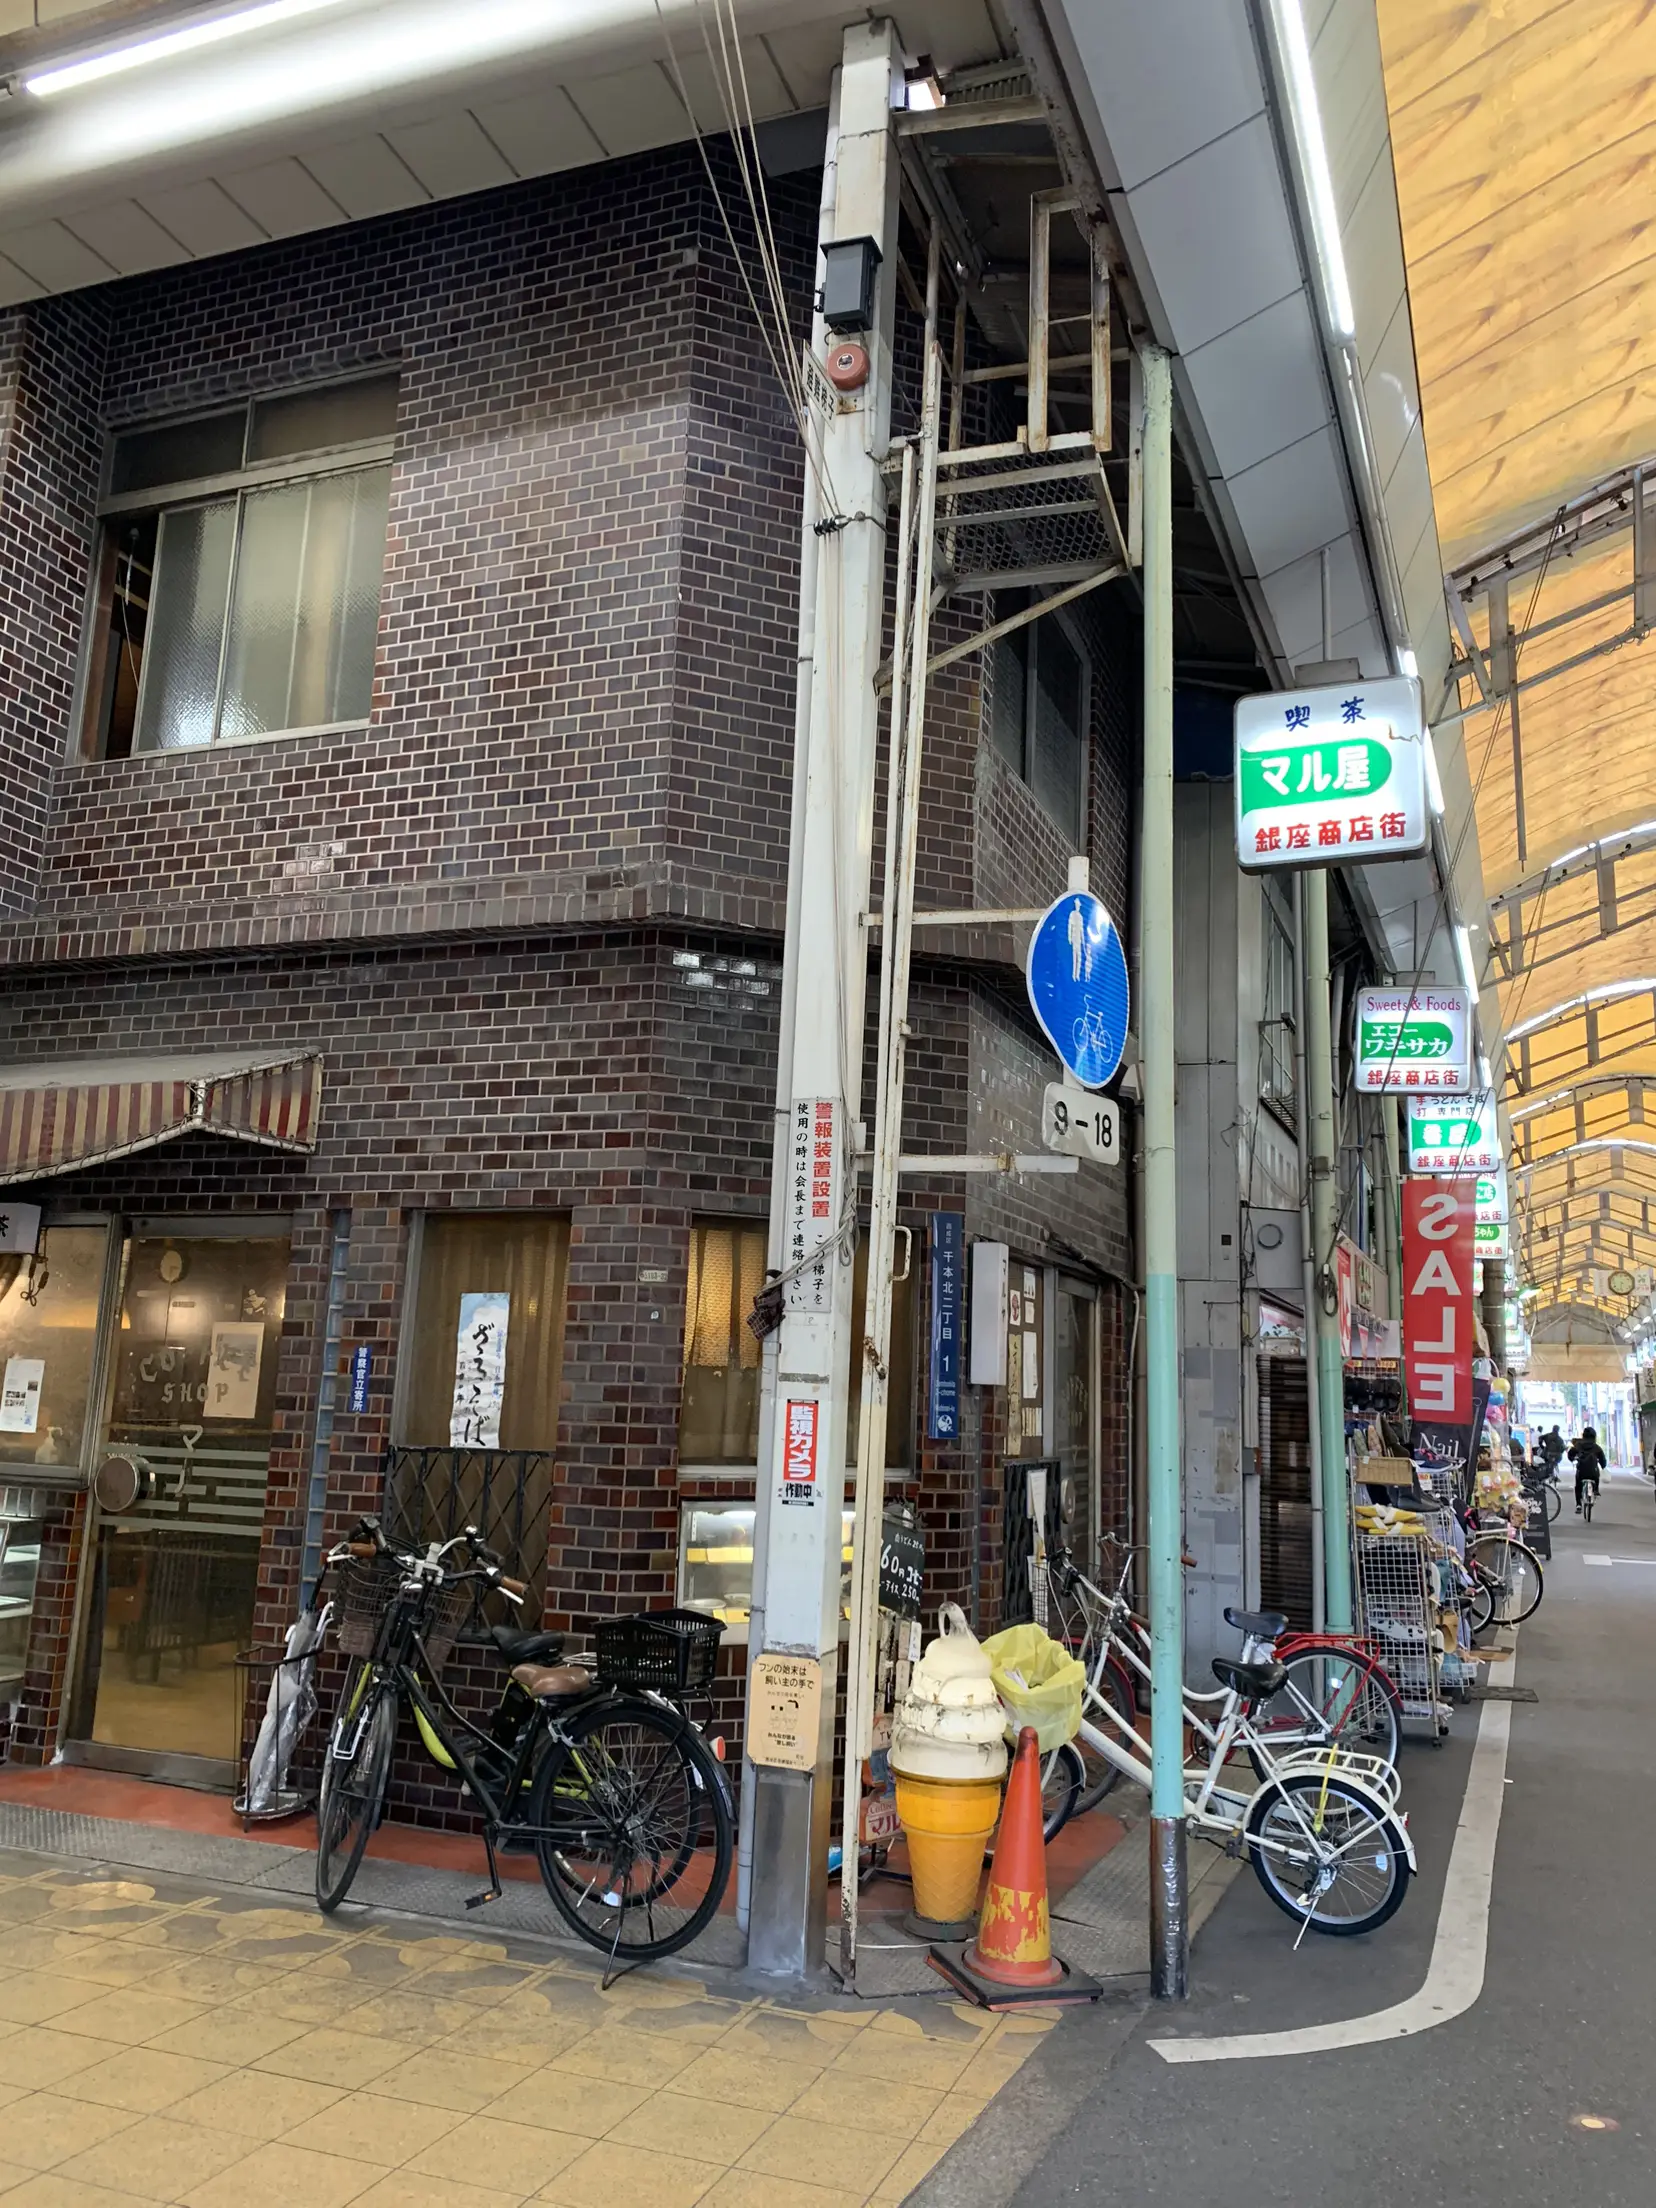 A coffee shop where time has stopped since the Showa era [Osaka 